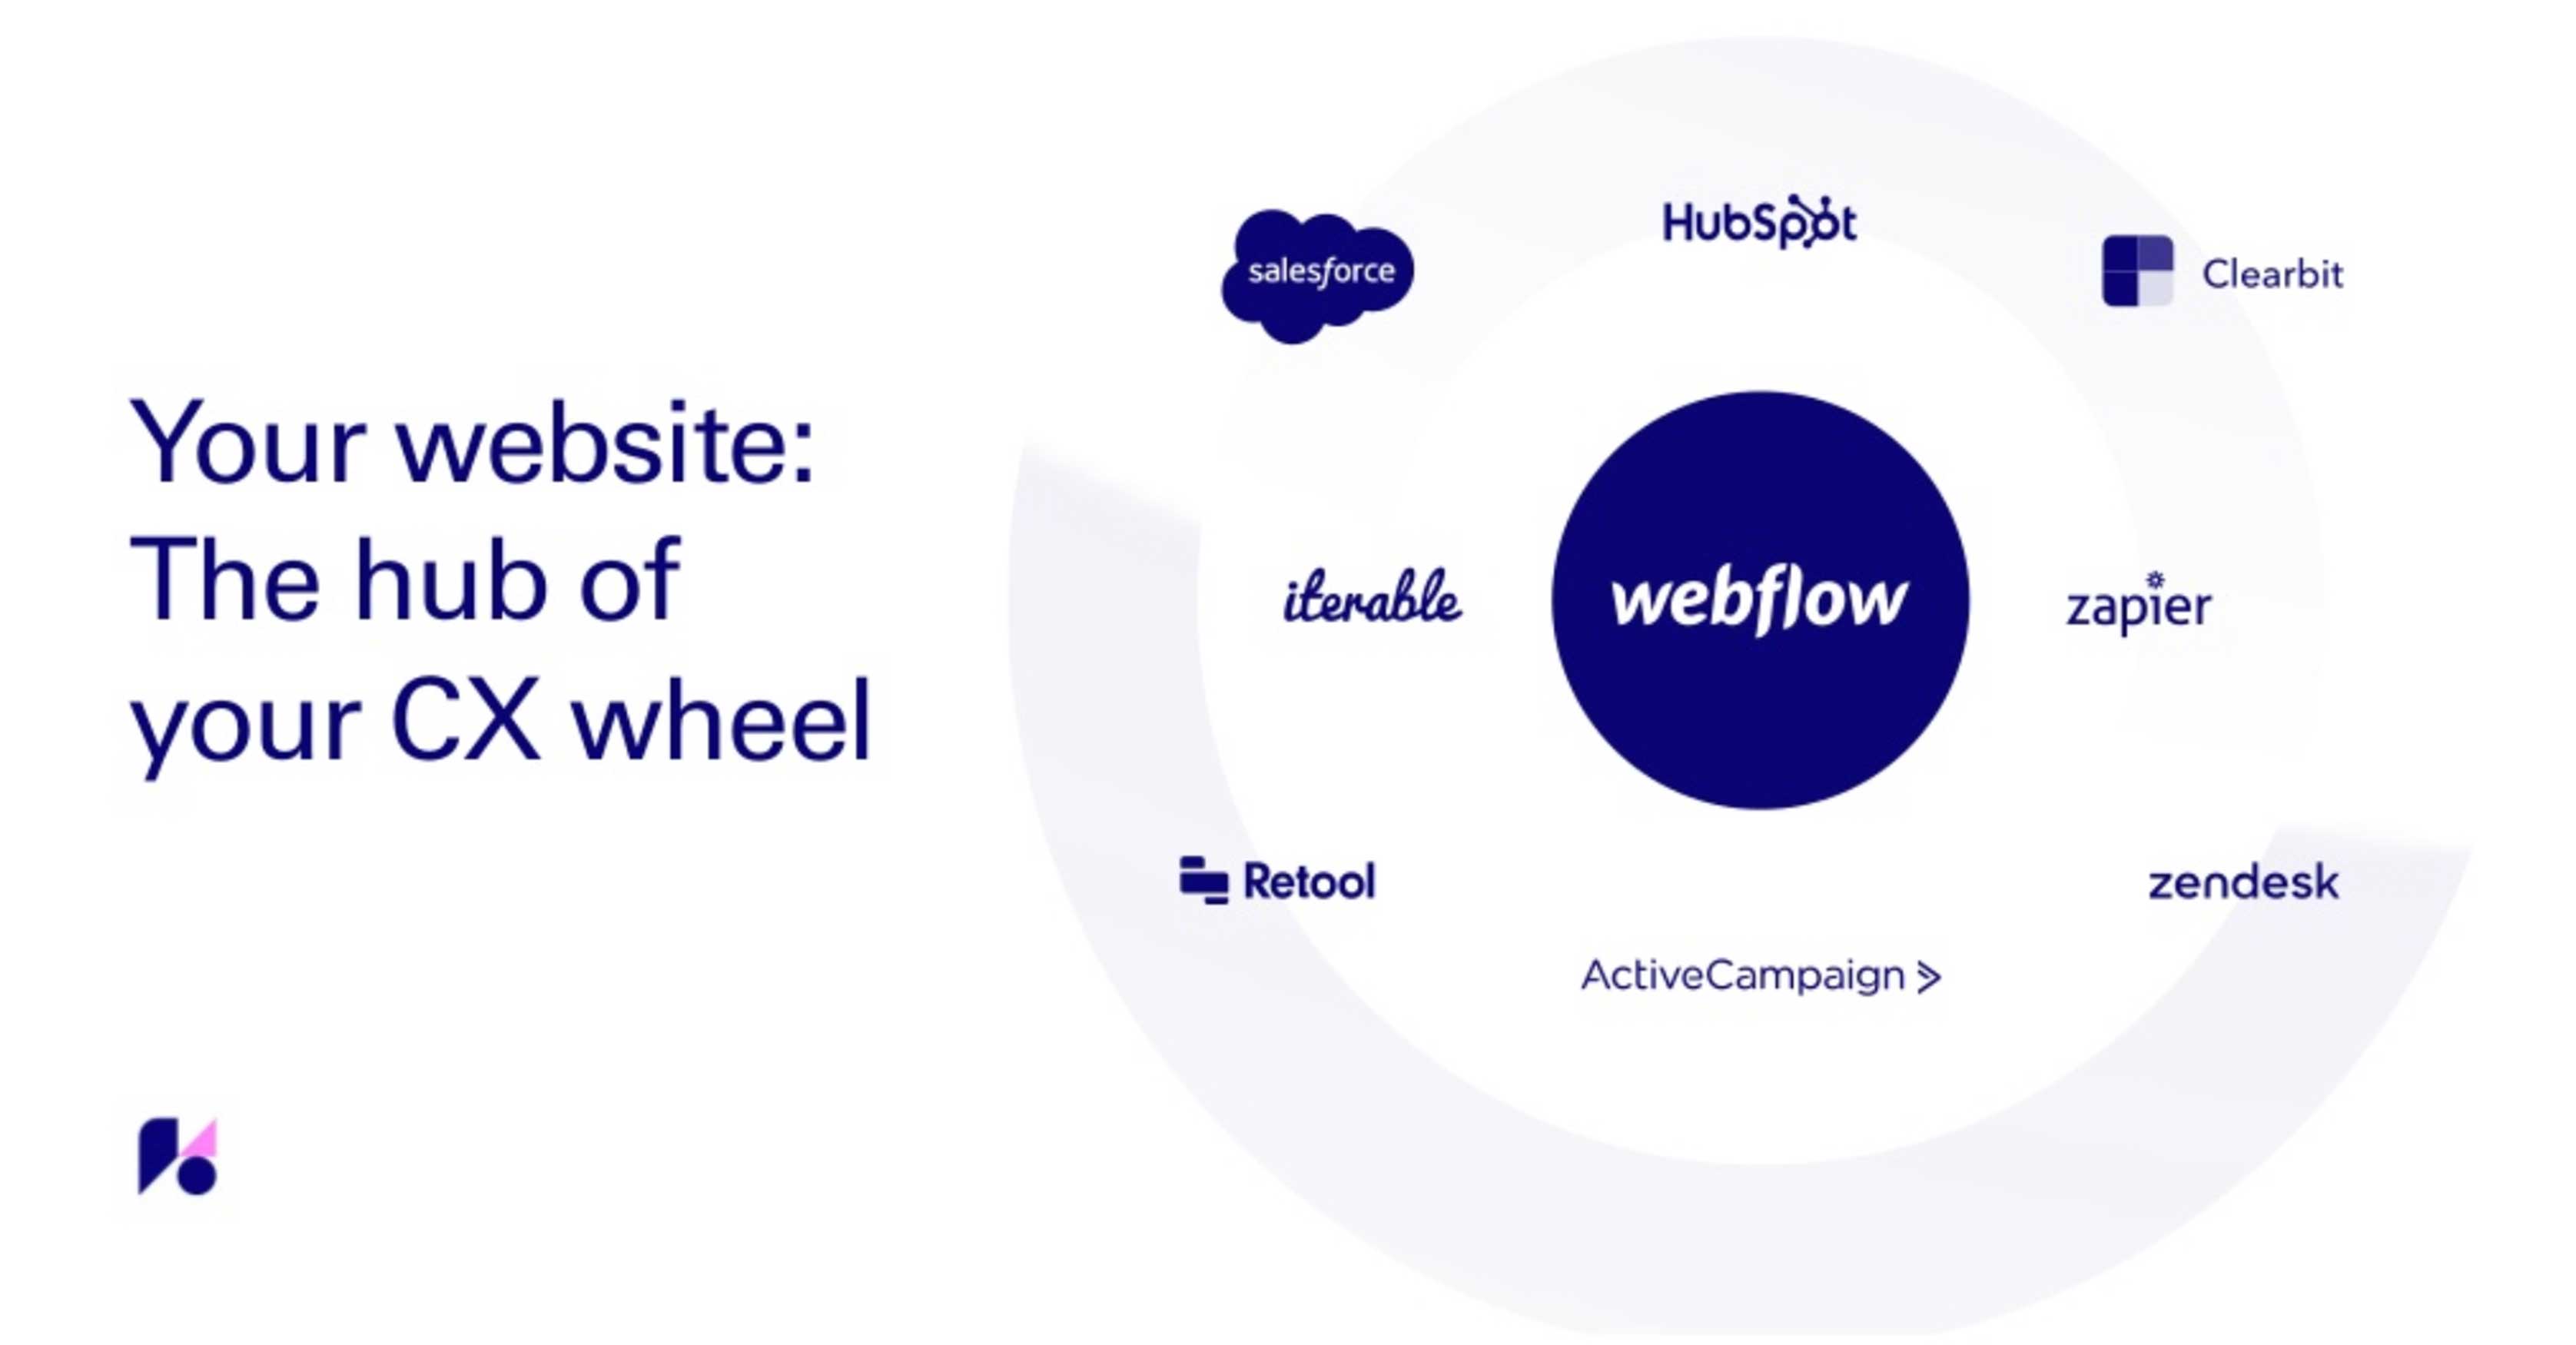 帶有 webflow 的第三方應用程序